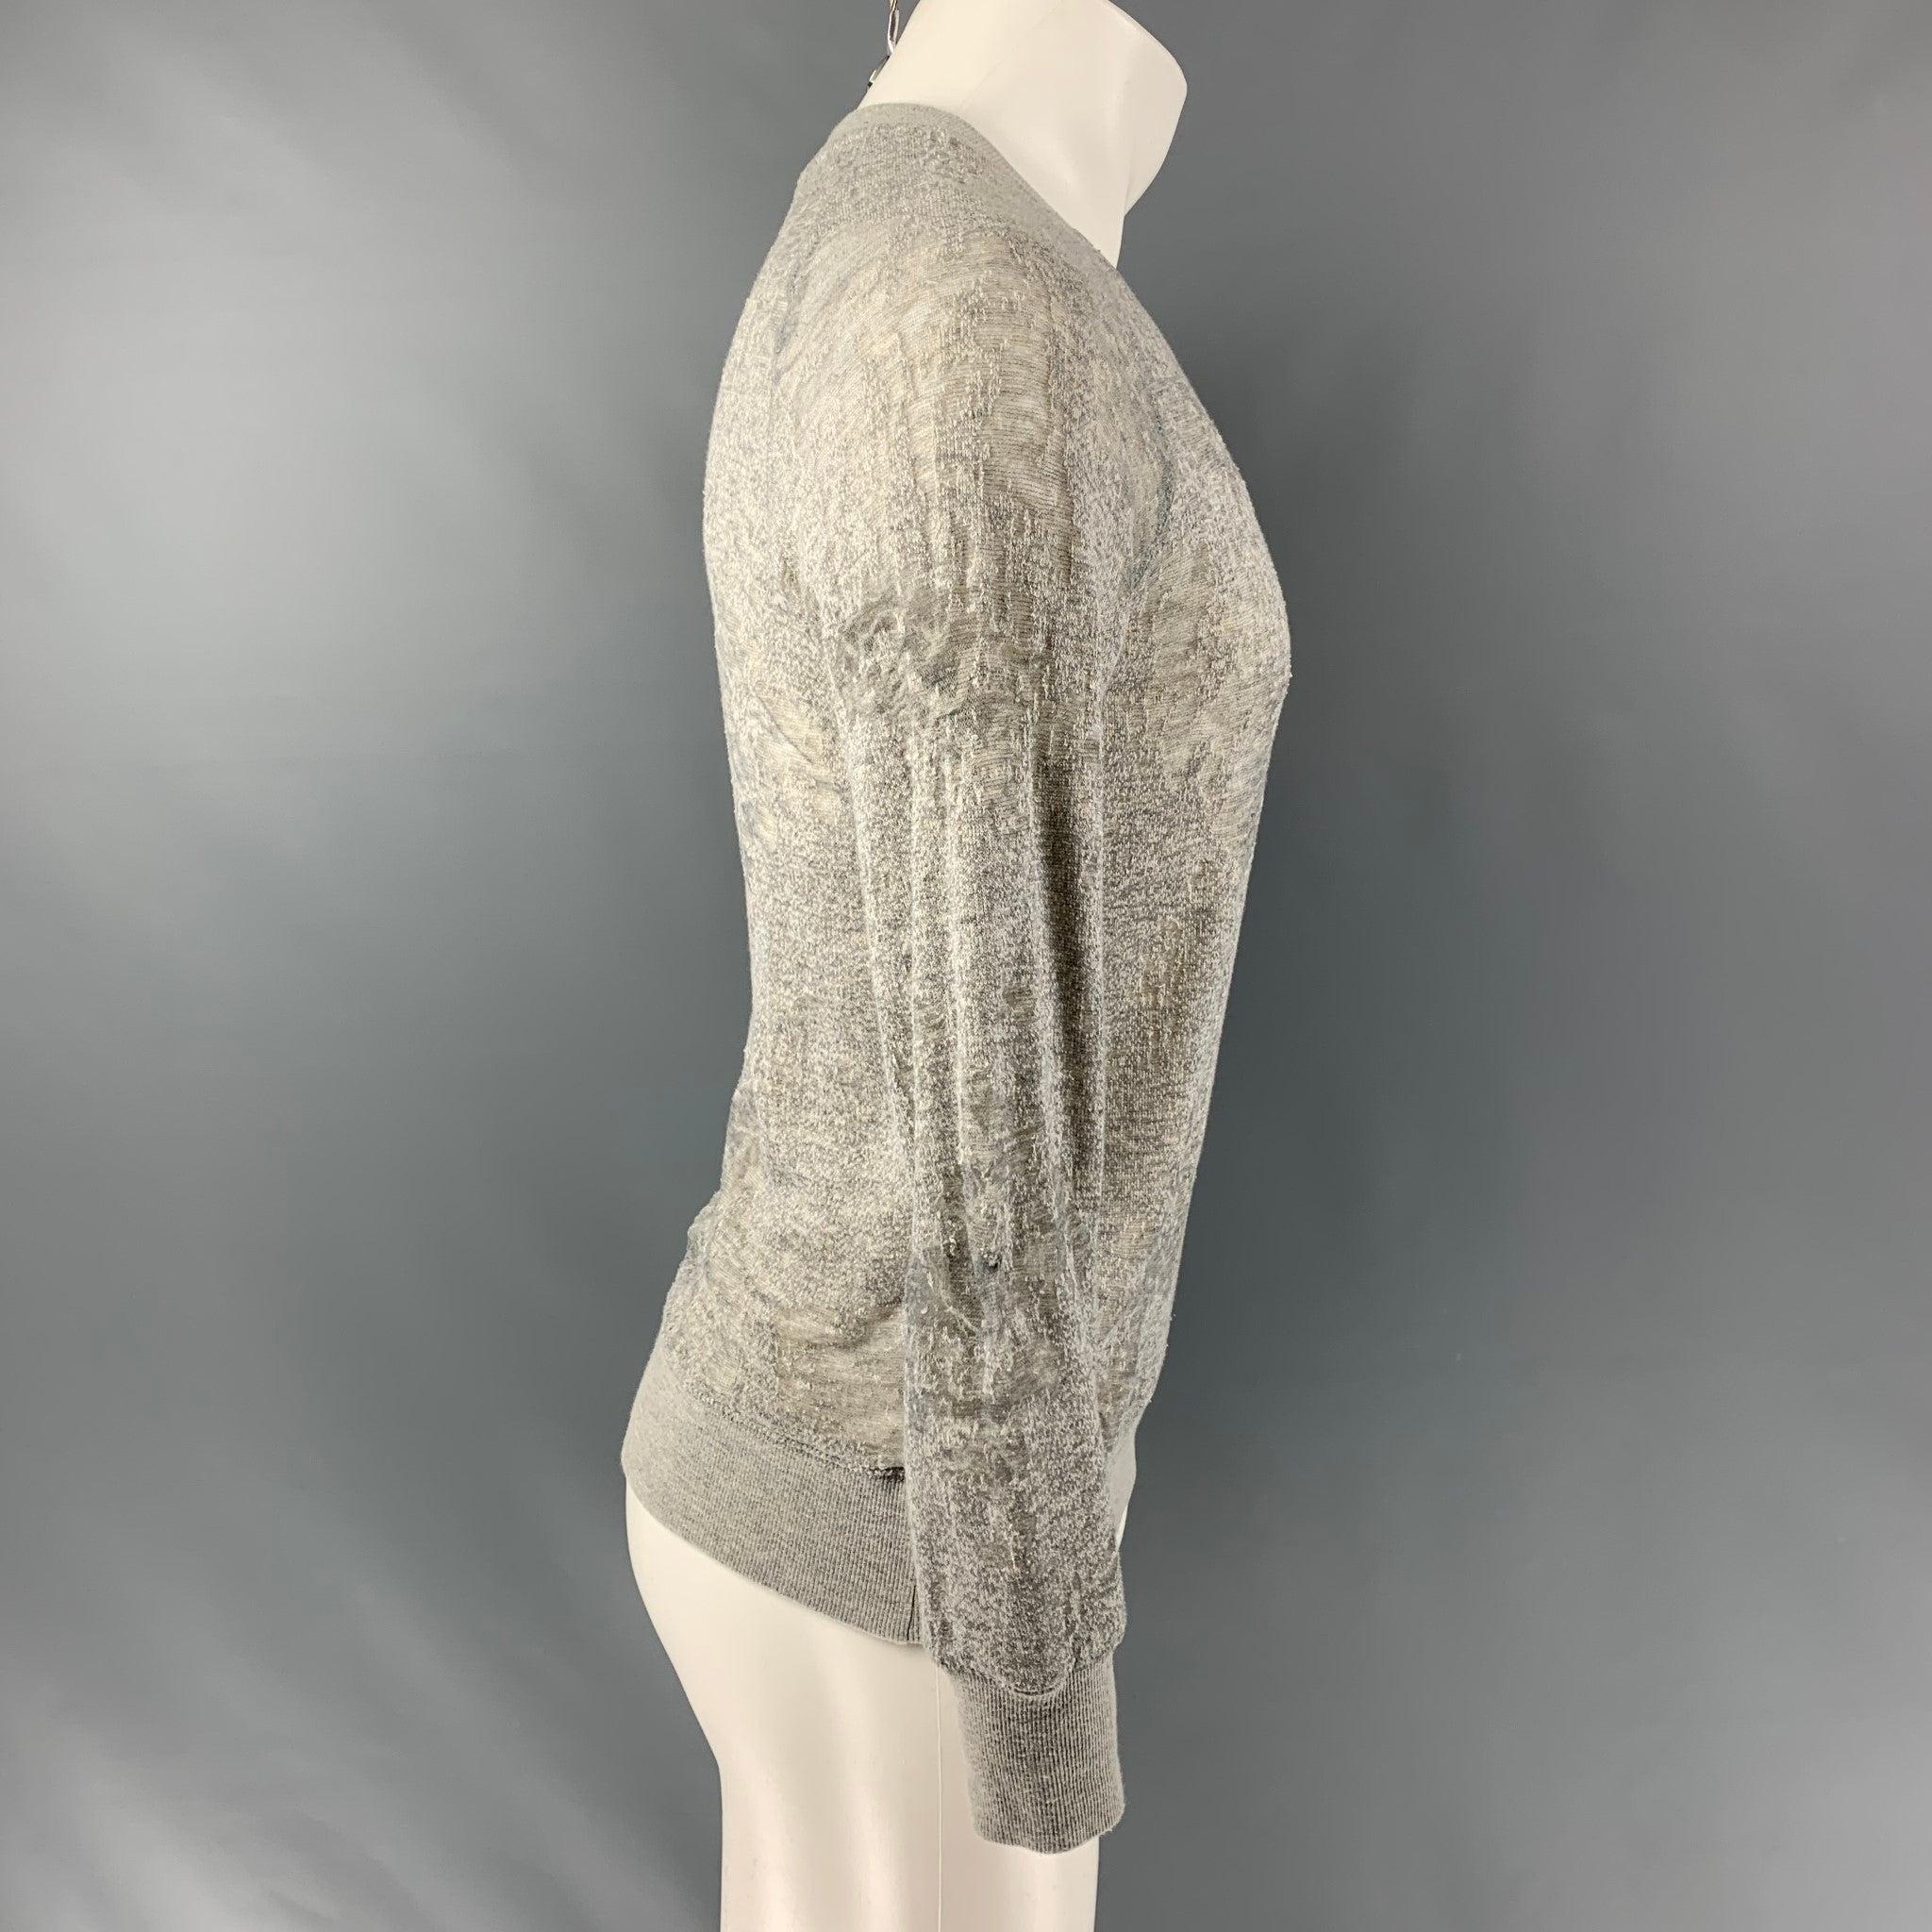 Le pull raglan à manches longues Nona d'IRO JEANS est réalisé en jersey de coton mélangé gris chiné partiellement transparent. Il présente un style vieilli et une encolure ras-du-cou. Excellent état d'origine.  

Marqué :   S 

Mesures : 
 
Épaule :